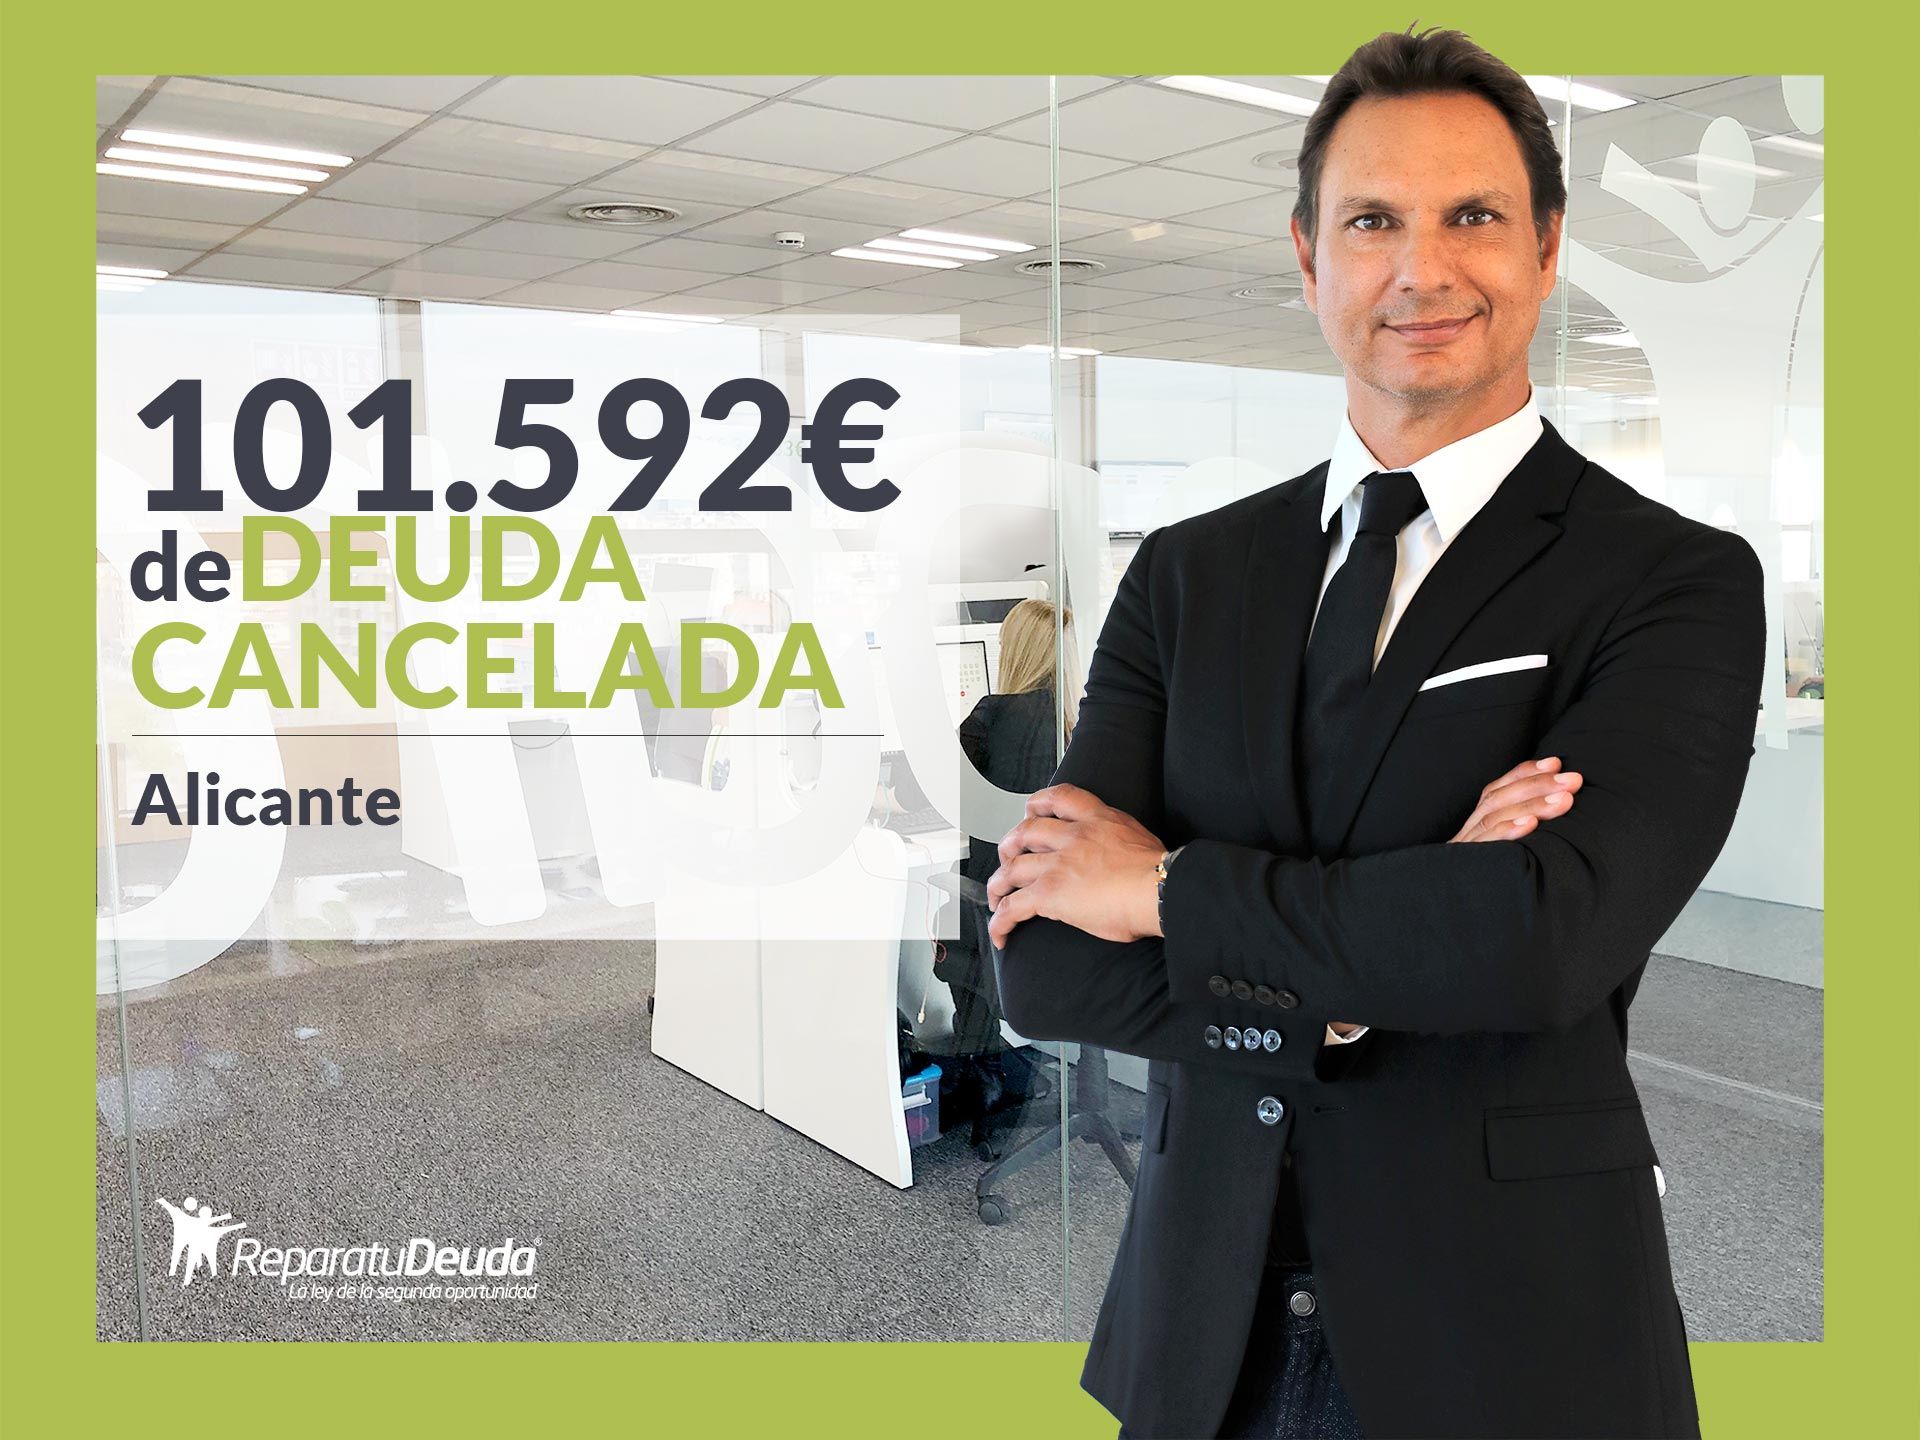 Repara tu Deuda cancela 101.592? en Alicante (Comunidad Valenciana) con la Ley de Segunda Oportunidad